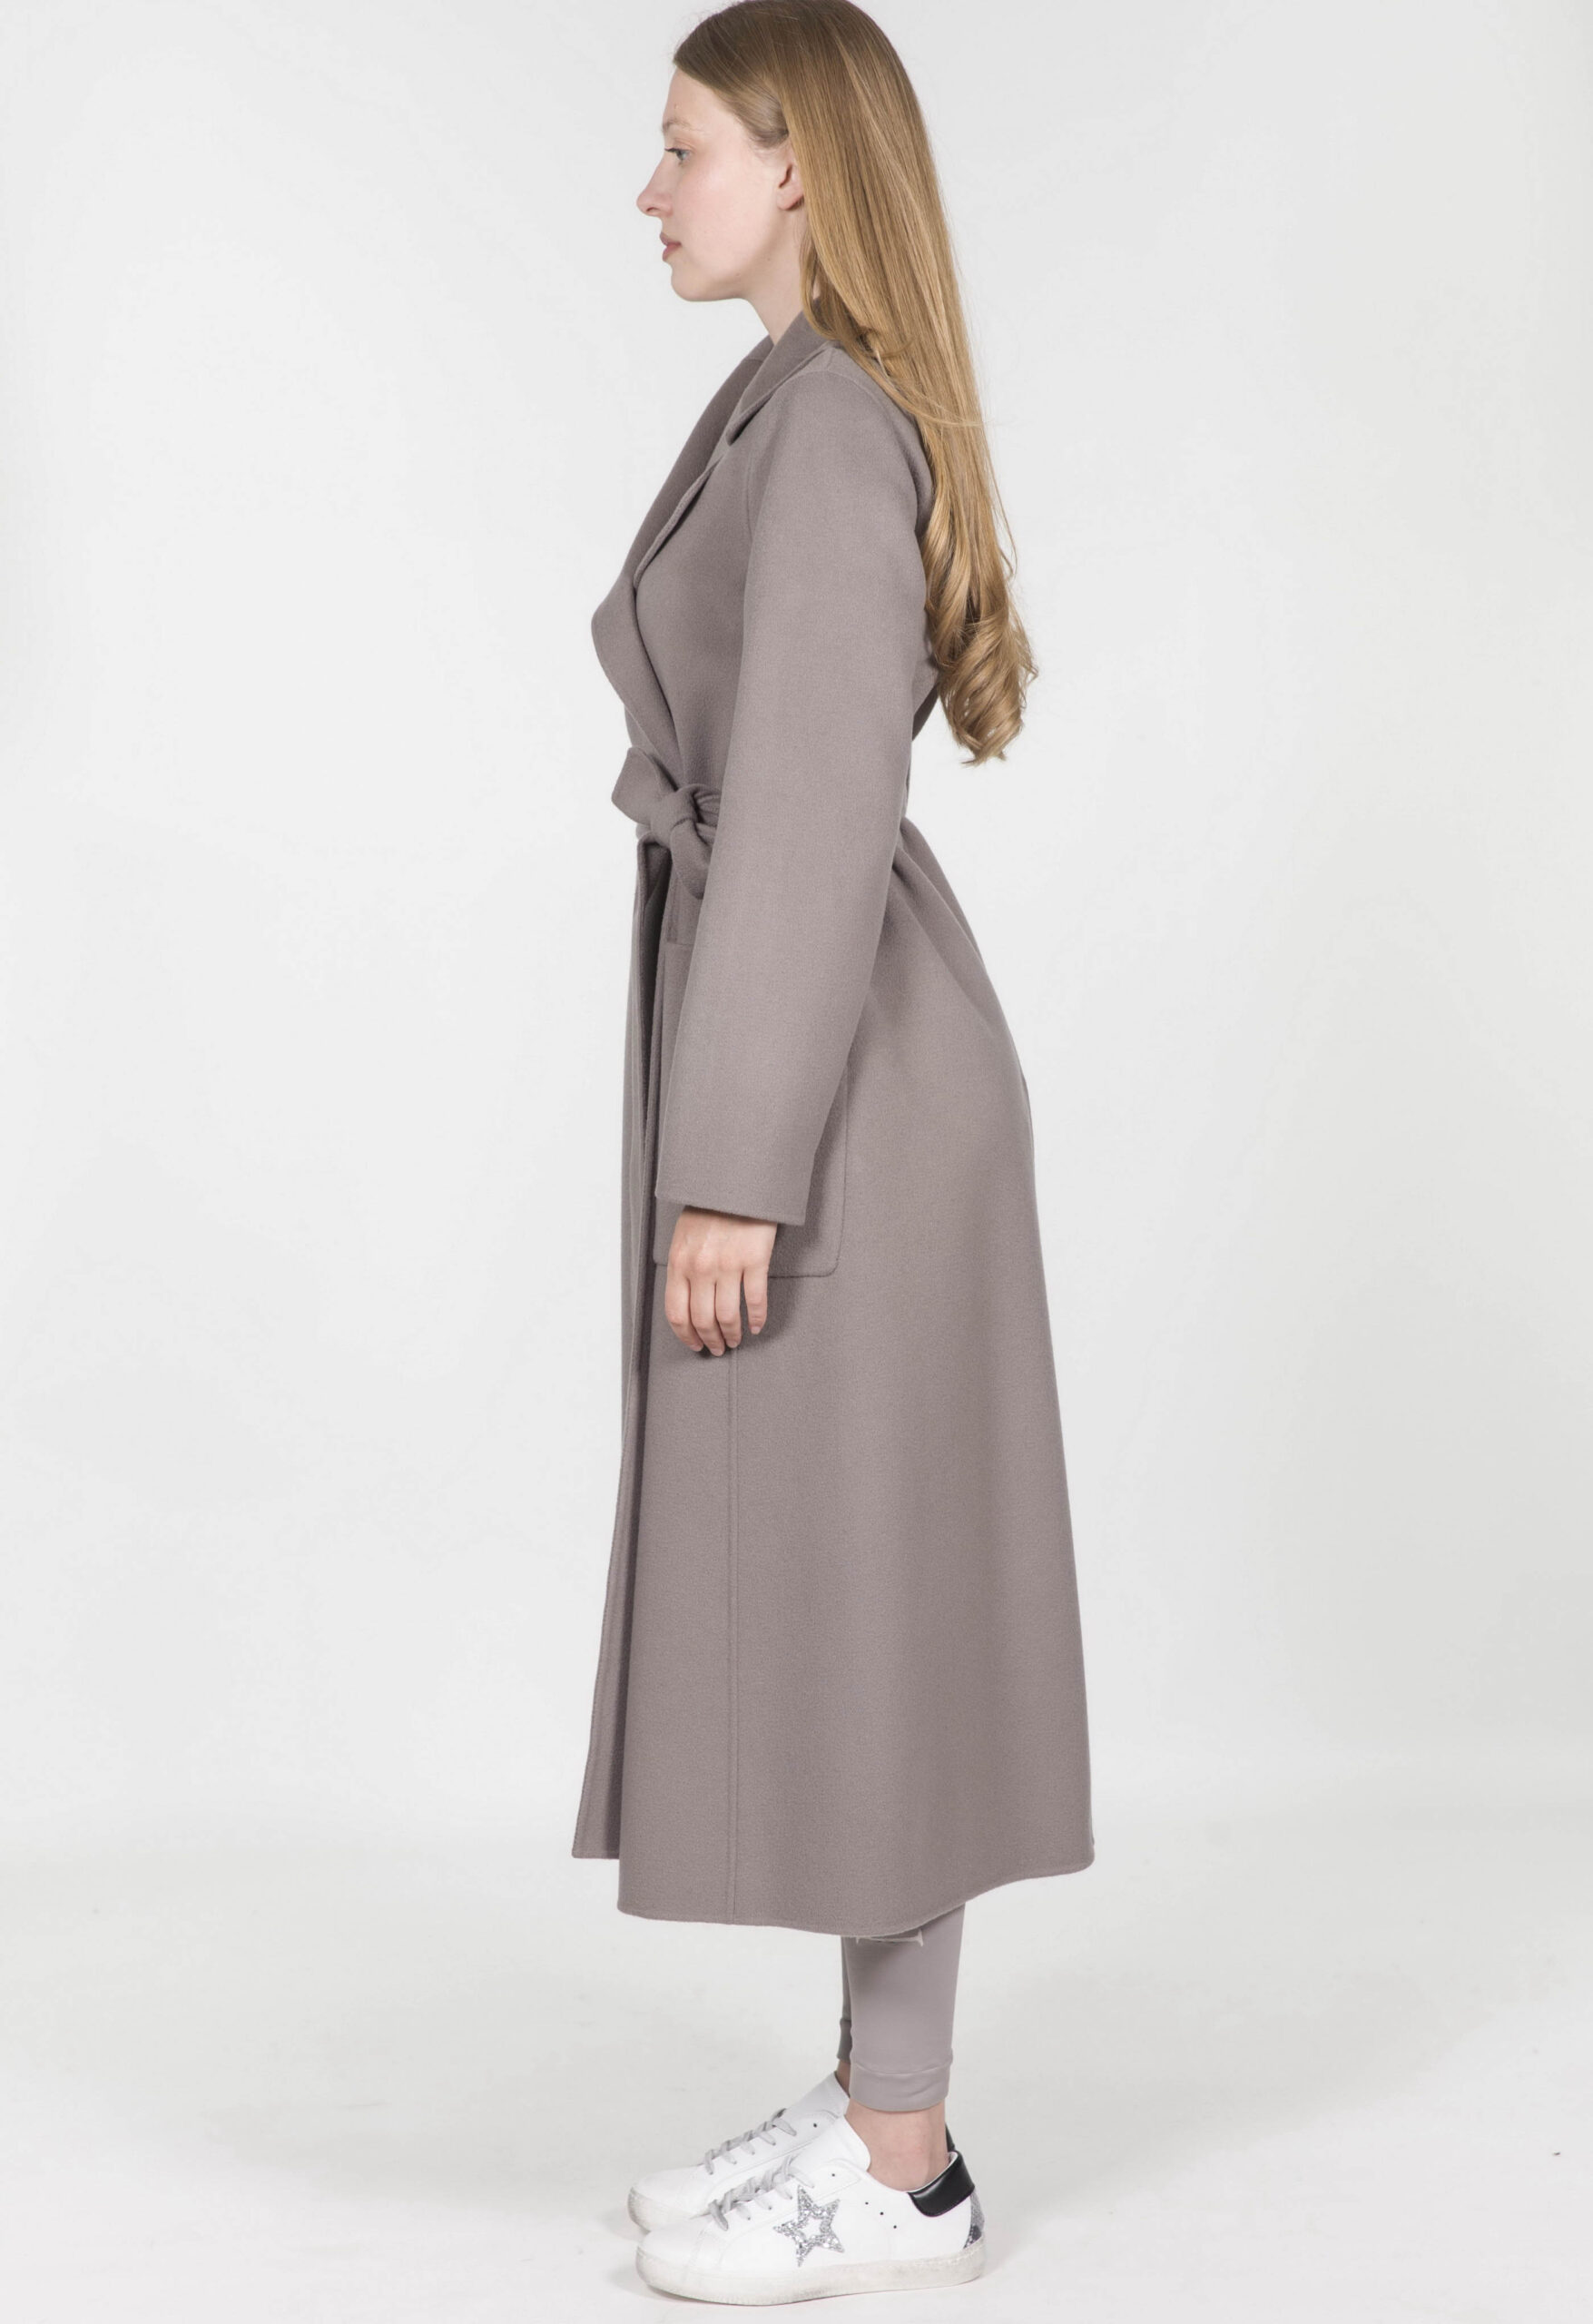 'S MAX MARA cappotto in lana PAOLORE variante 069 colore Grigio - Gemma